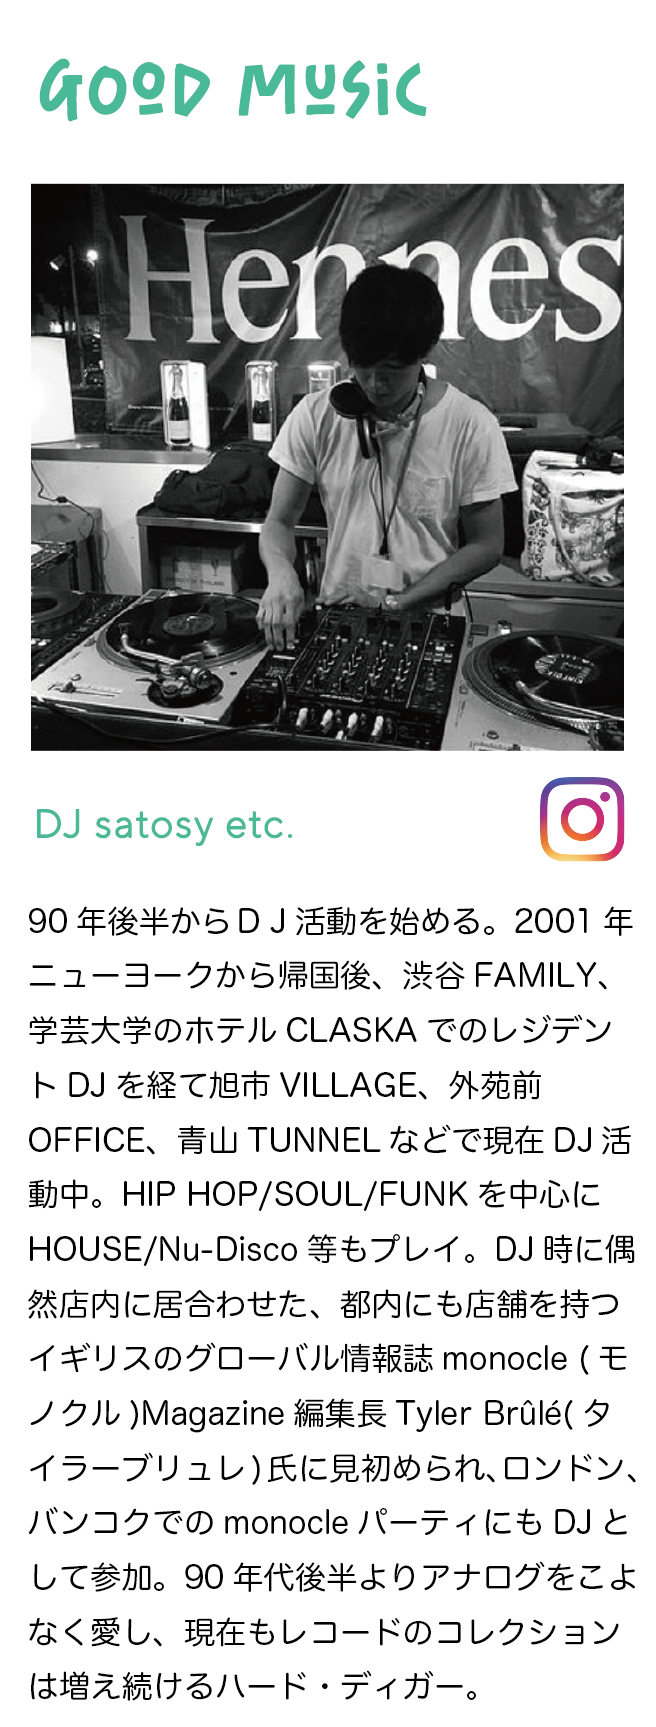 DJ satosy